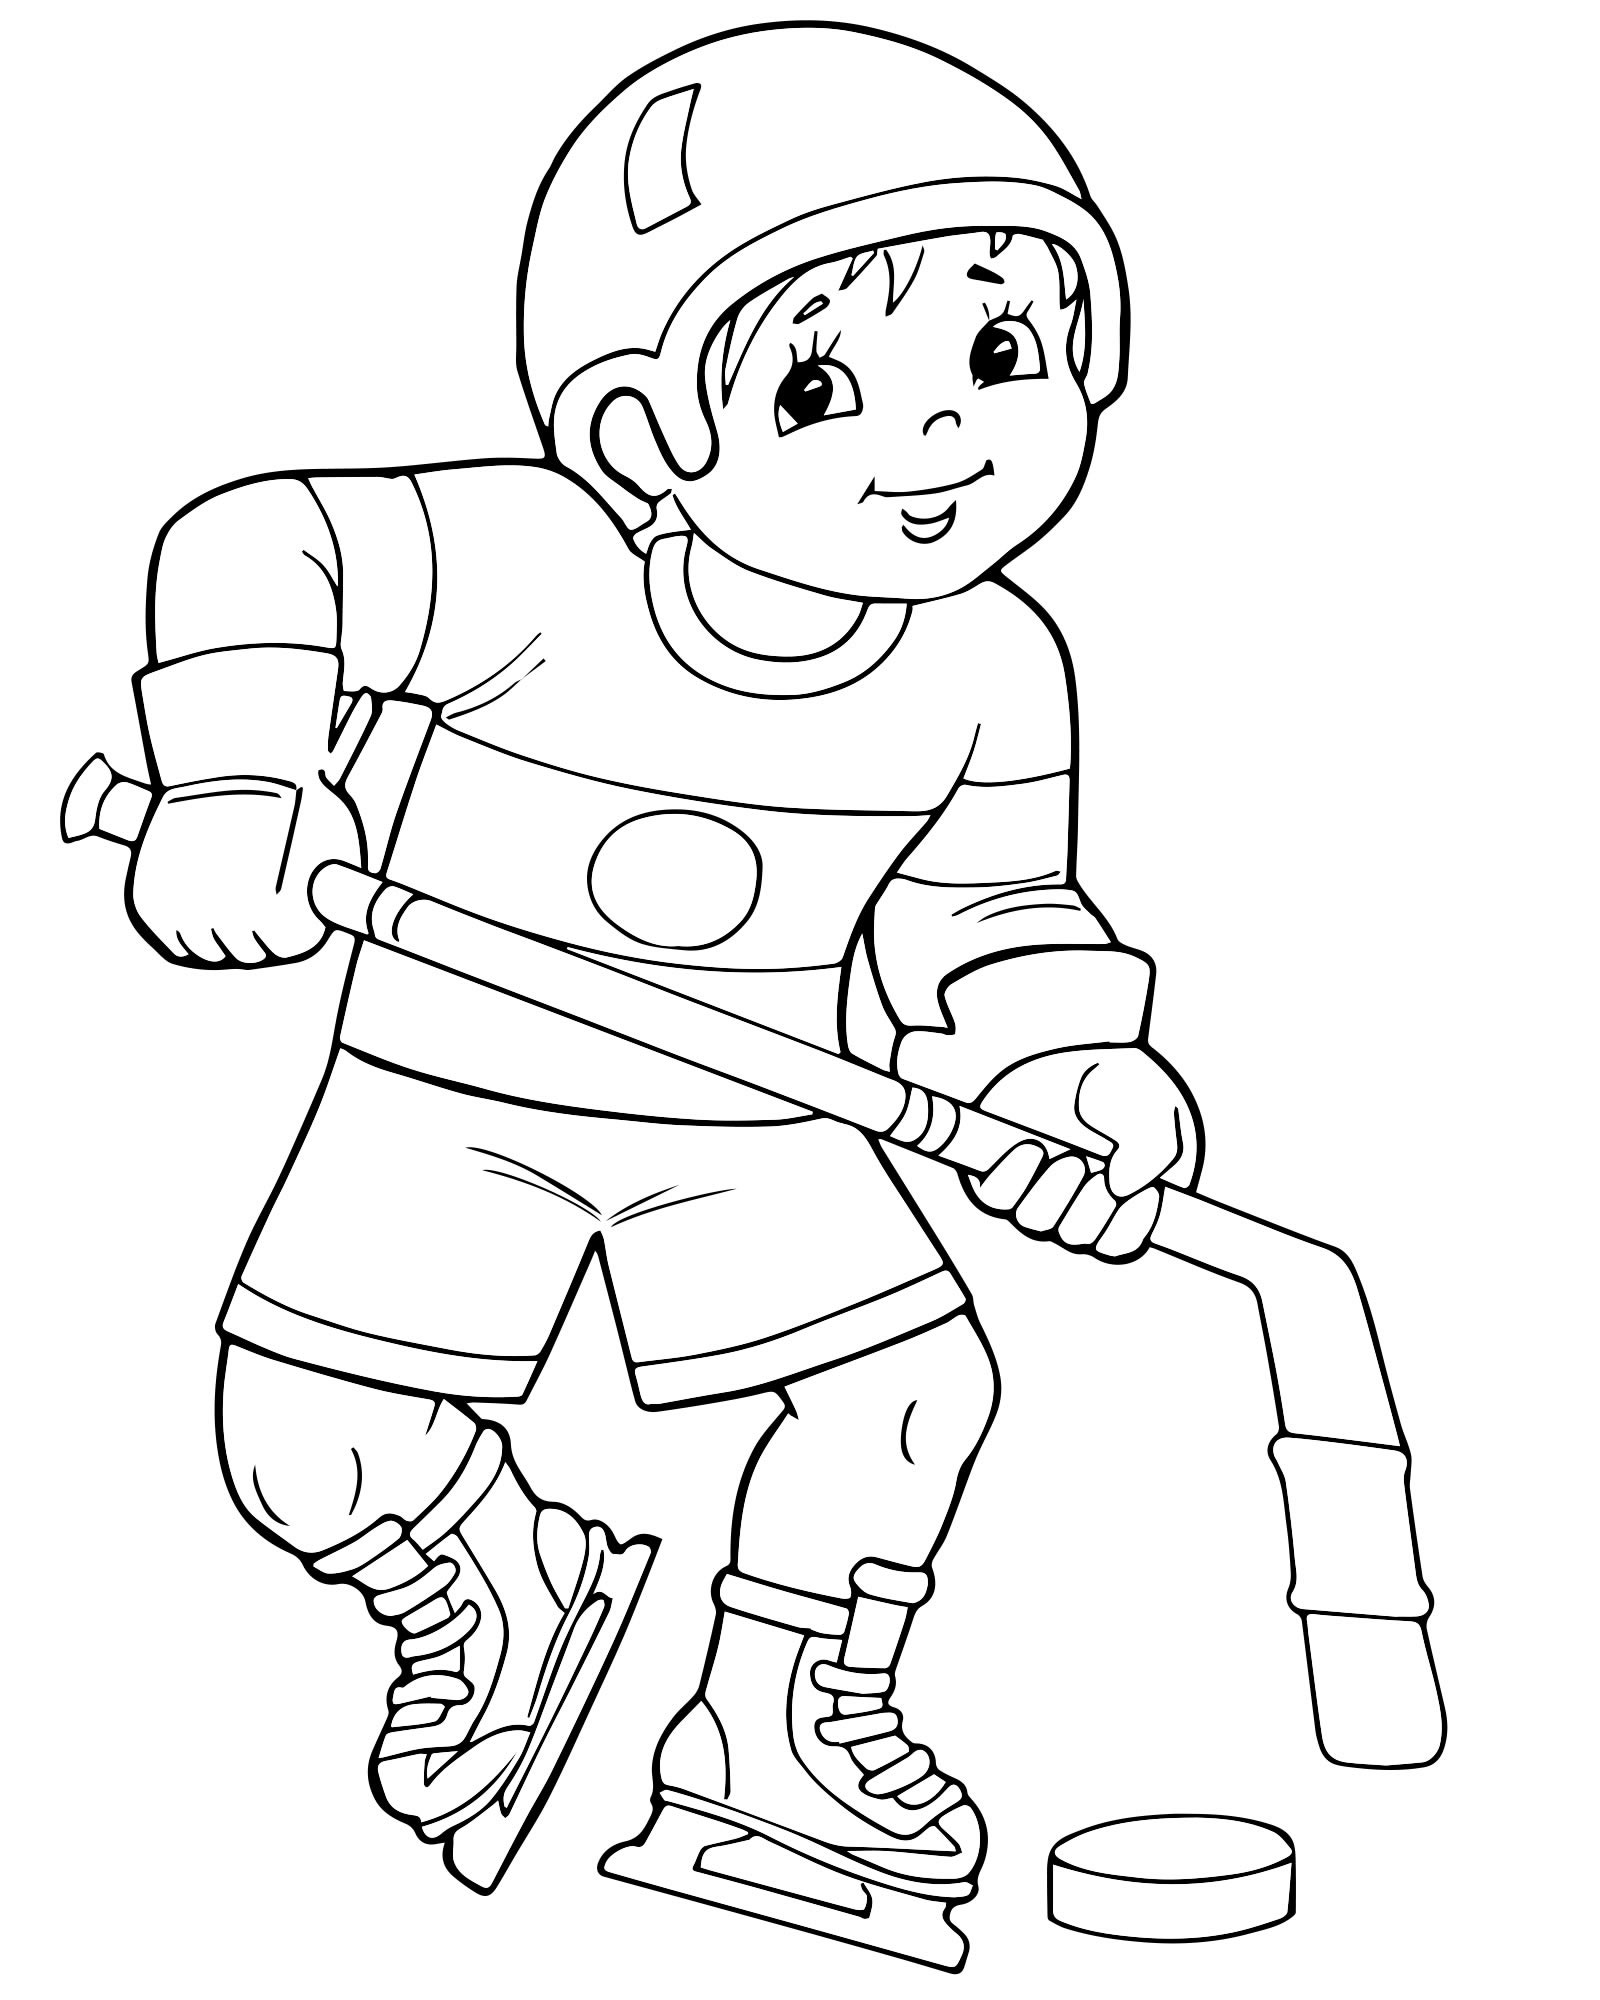 Раскраска Спорт для детей - детские раскраски распечатать бесплатно